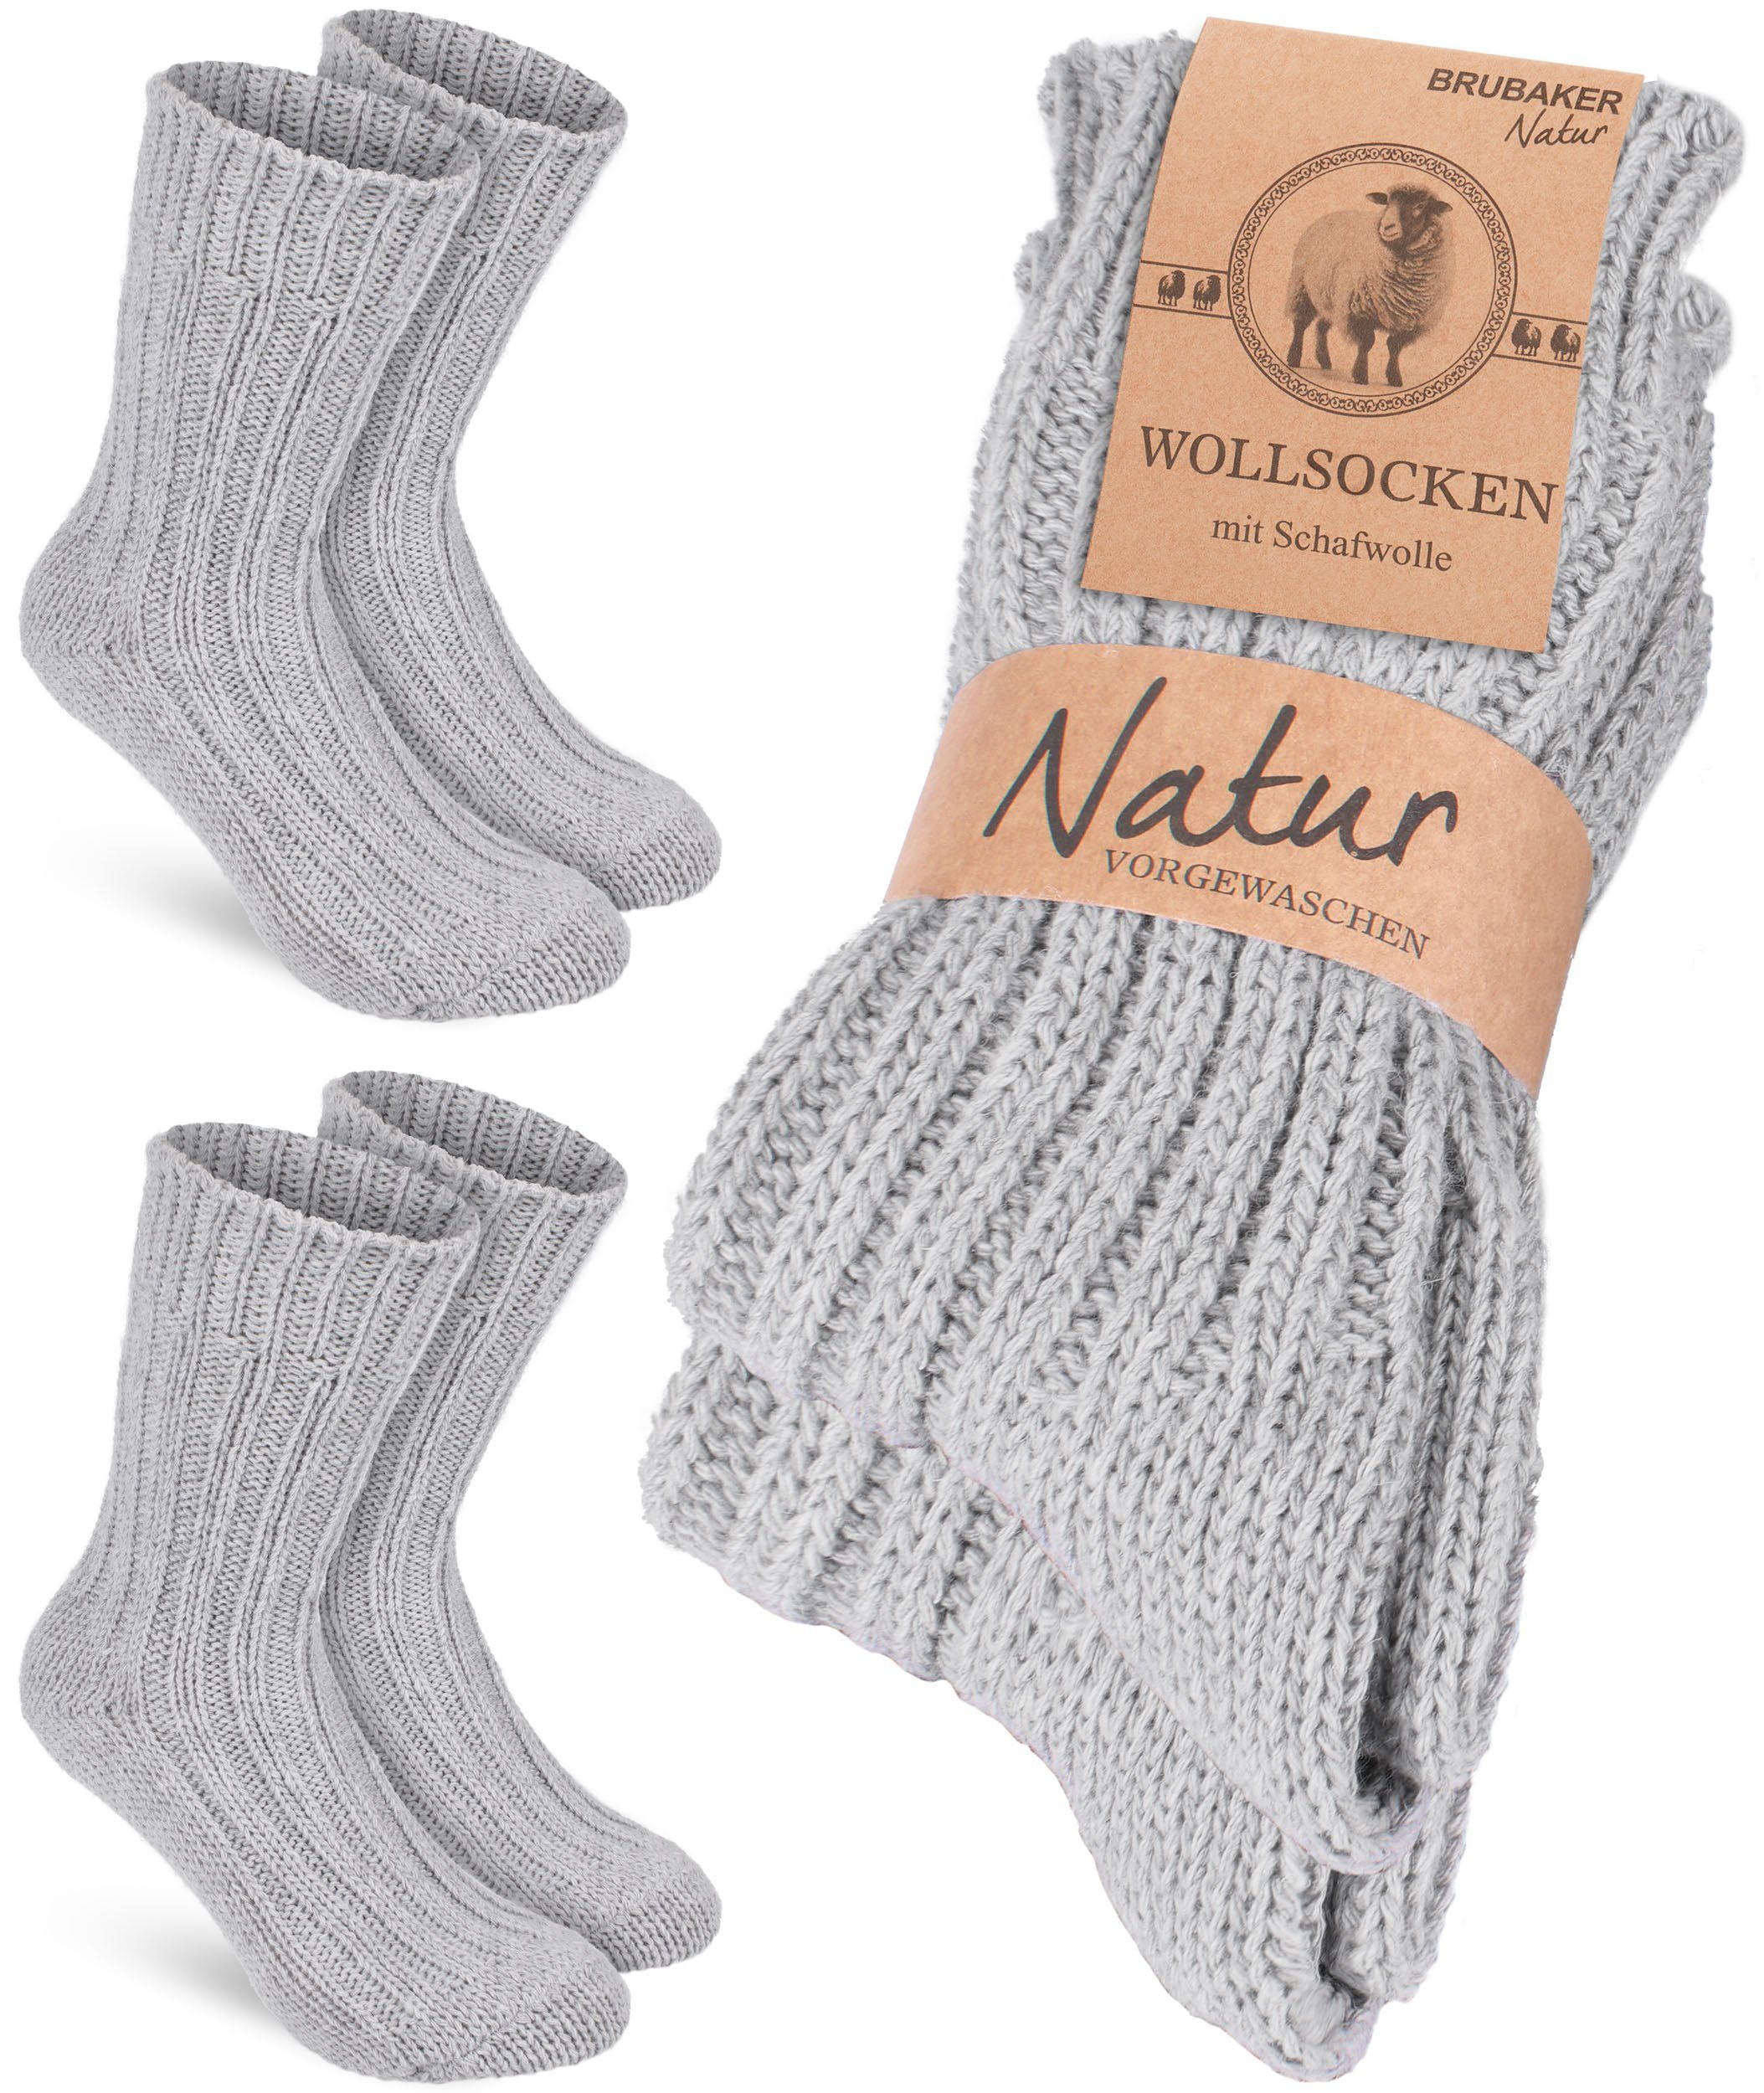 BRUBAKER Socken Wollsocken - Wintersocken für Damen und Herren - Warm und Flauschig (2-Paar) Stricksocken Set mit Schafwolle - Winter Thermosocken Grau